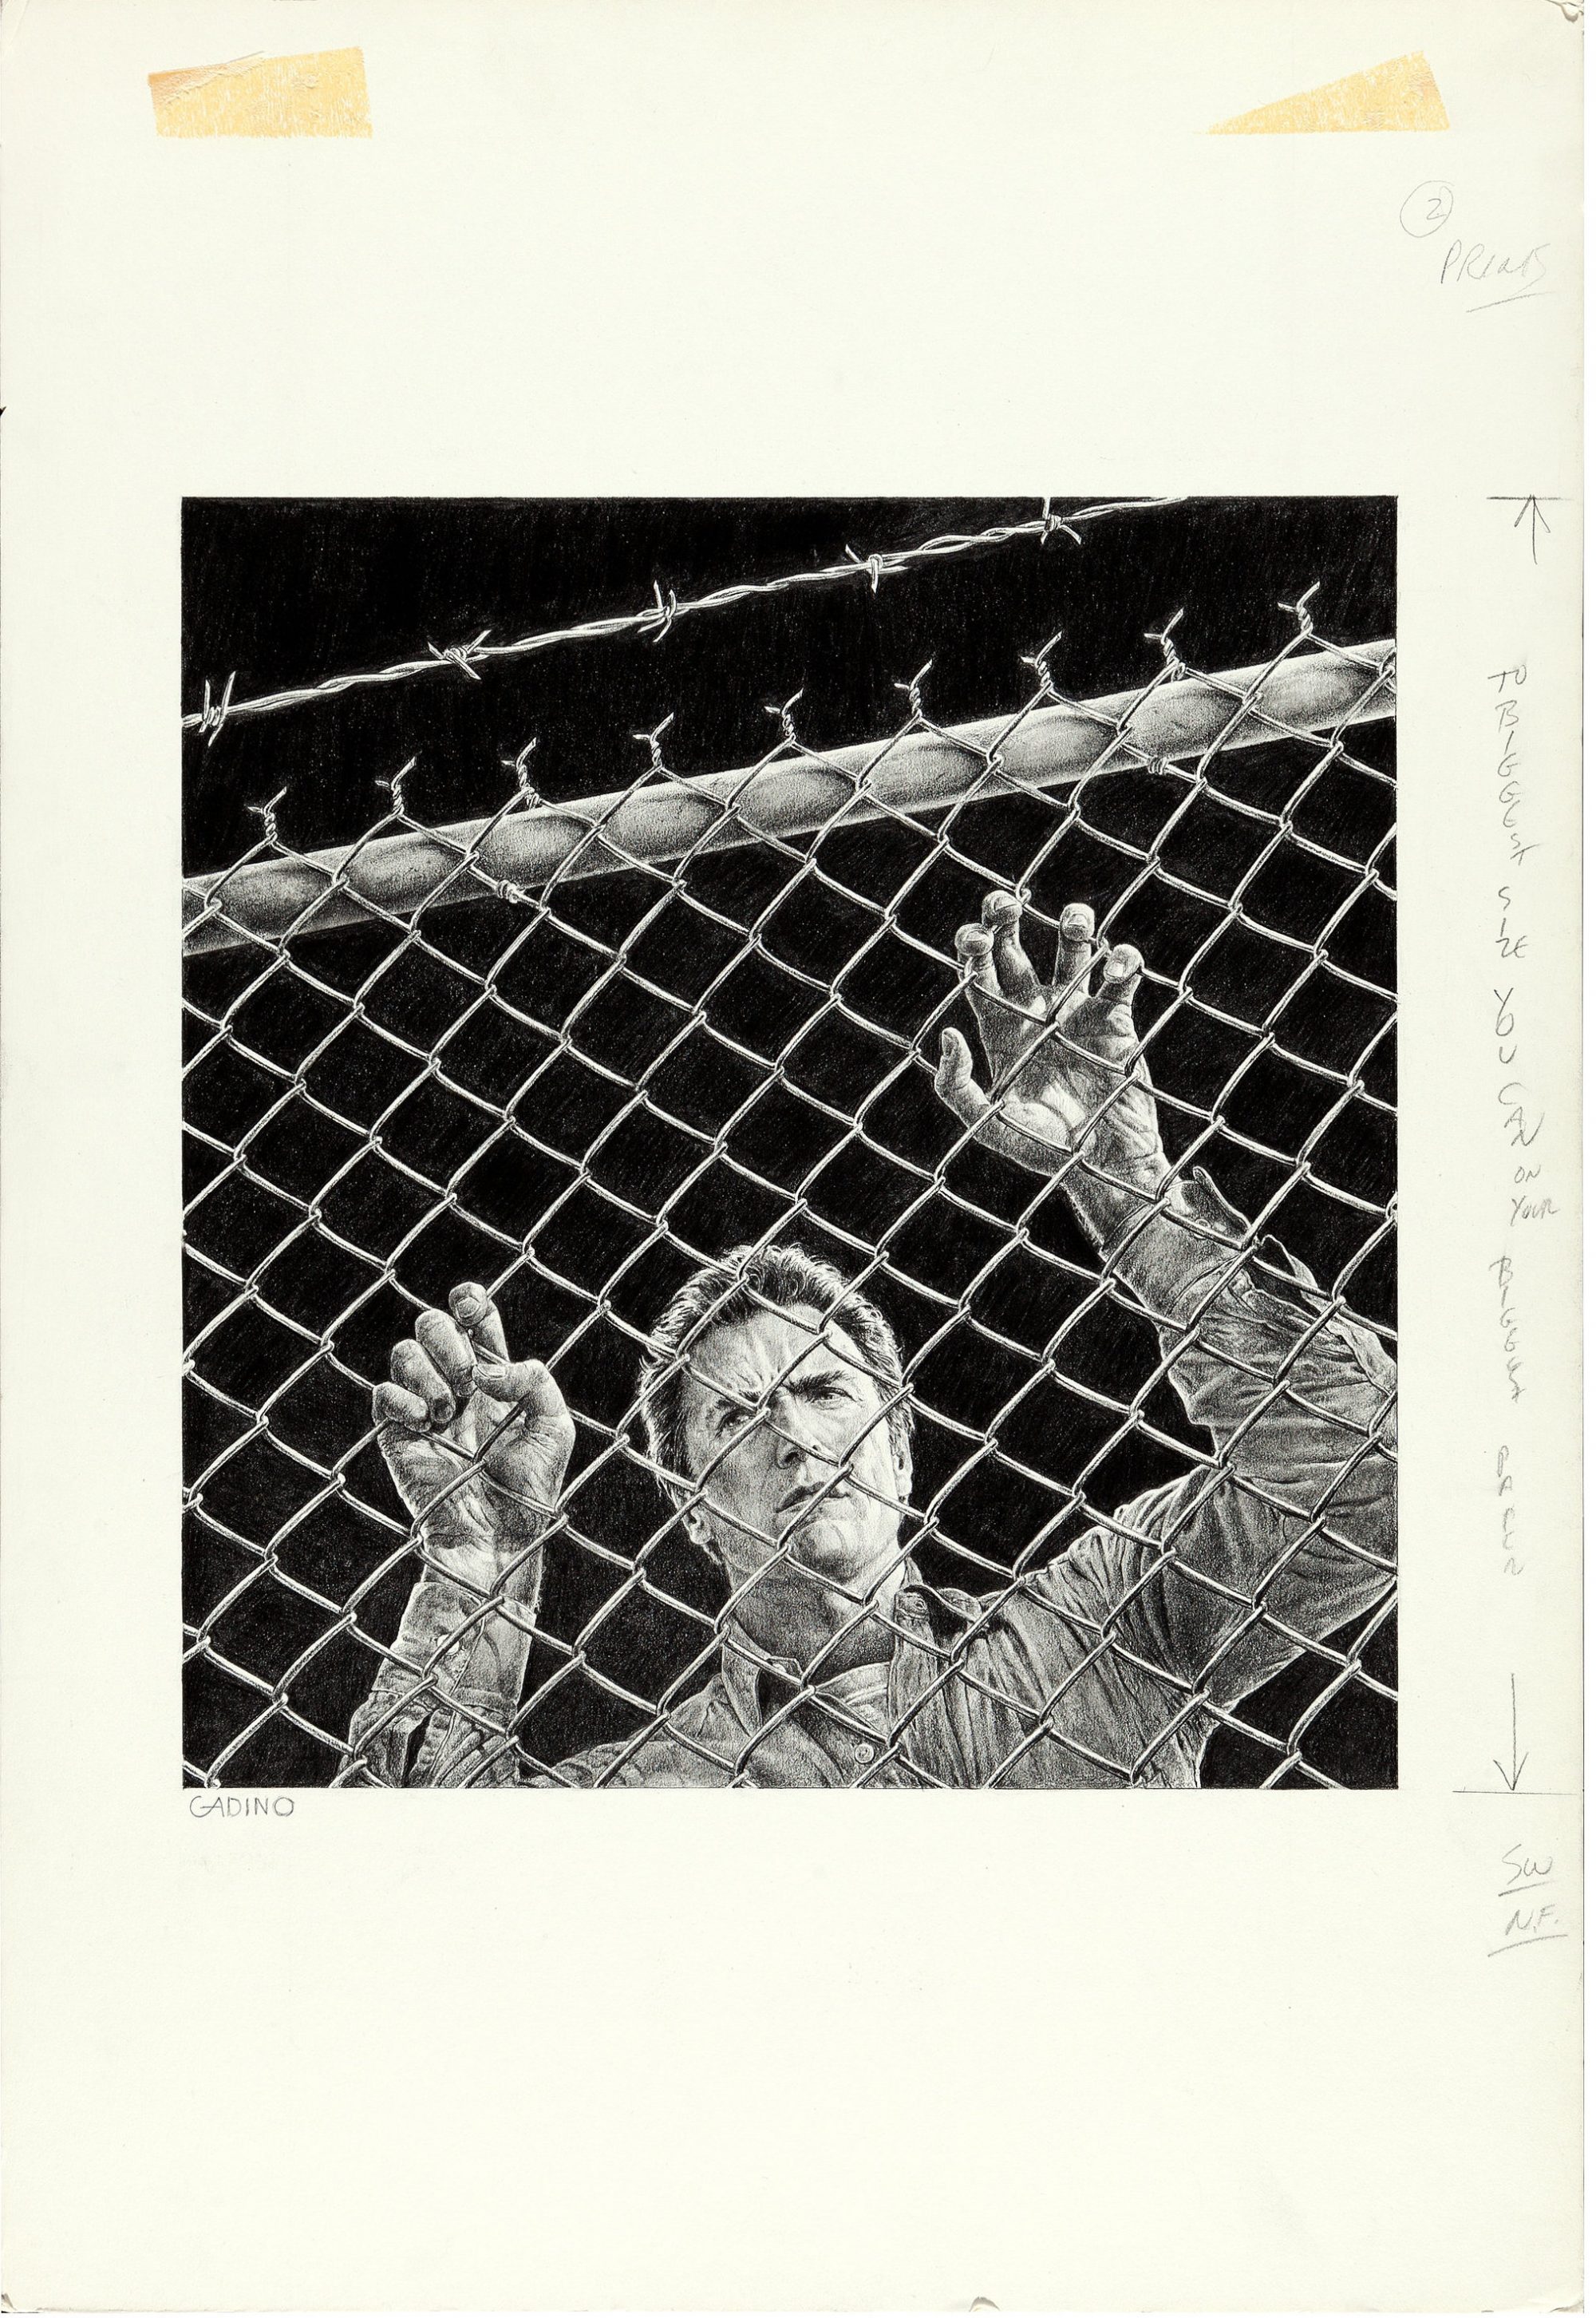 Escape from Alcatraz 1979 art by Victor Gadino